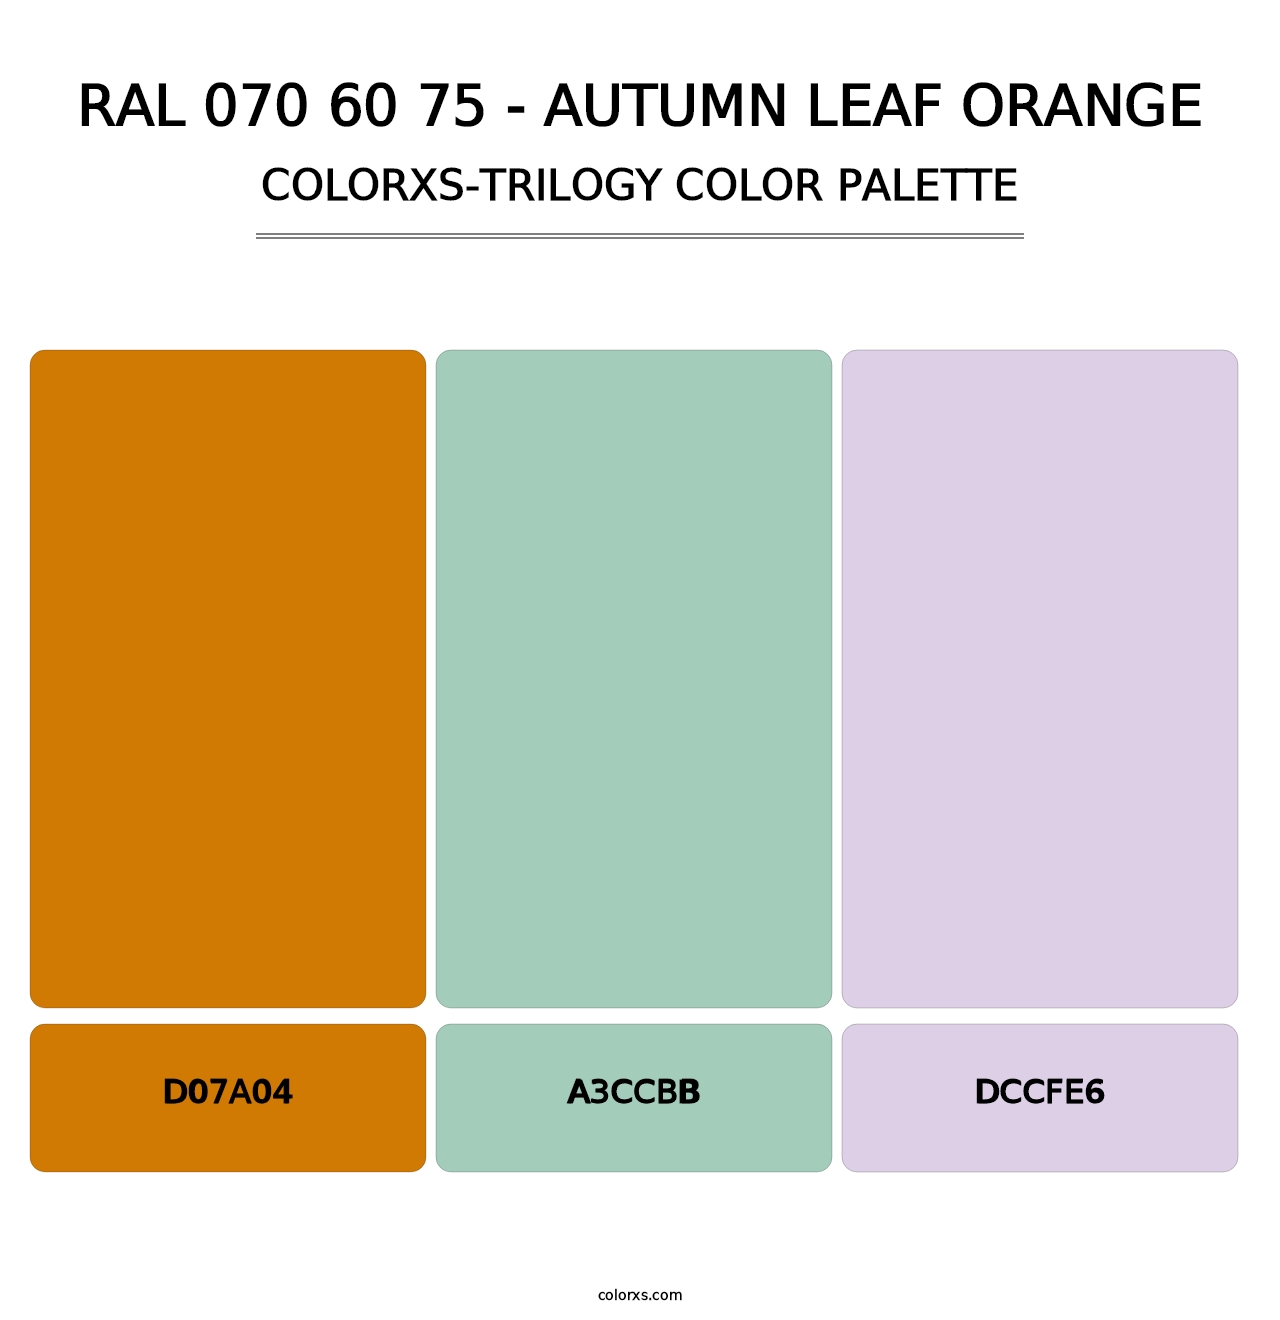 RAL 070 60 75 - Autumn Leaf Orange - Colorxs Trilogy Palette